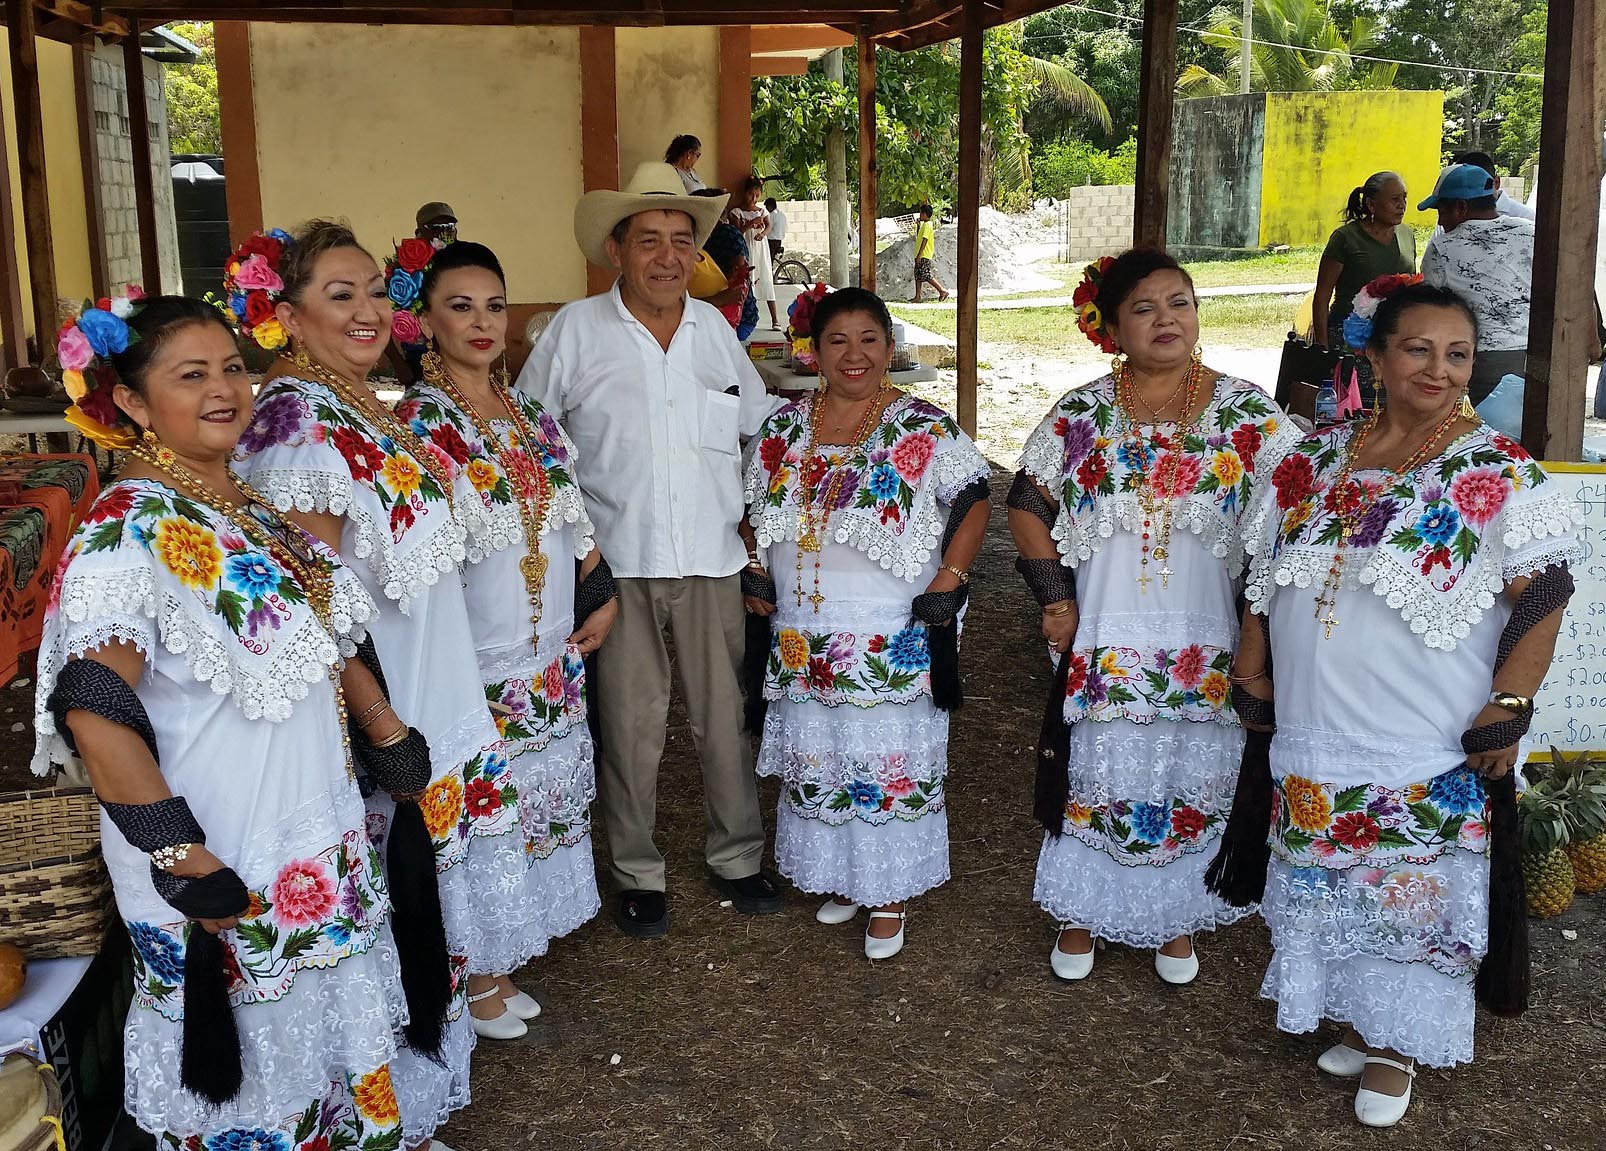 ucatec Maya Dancers